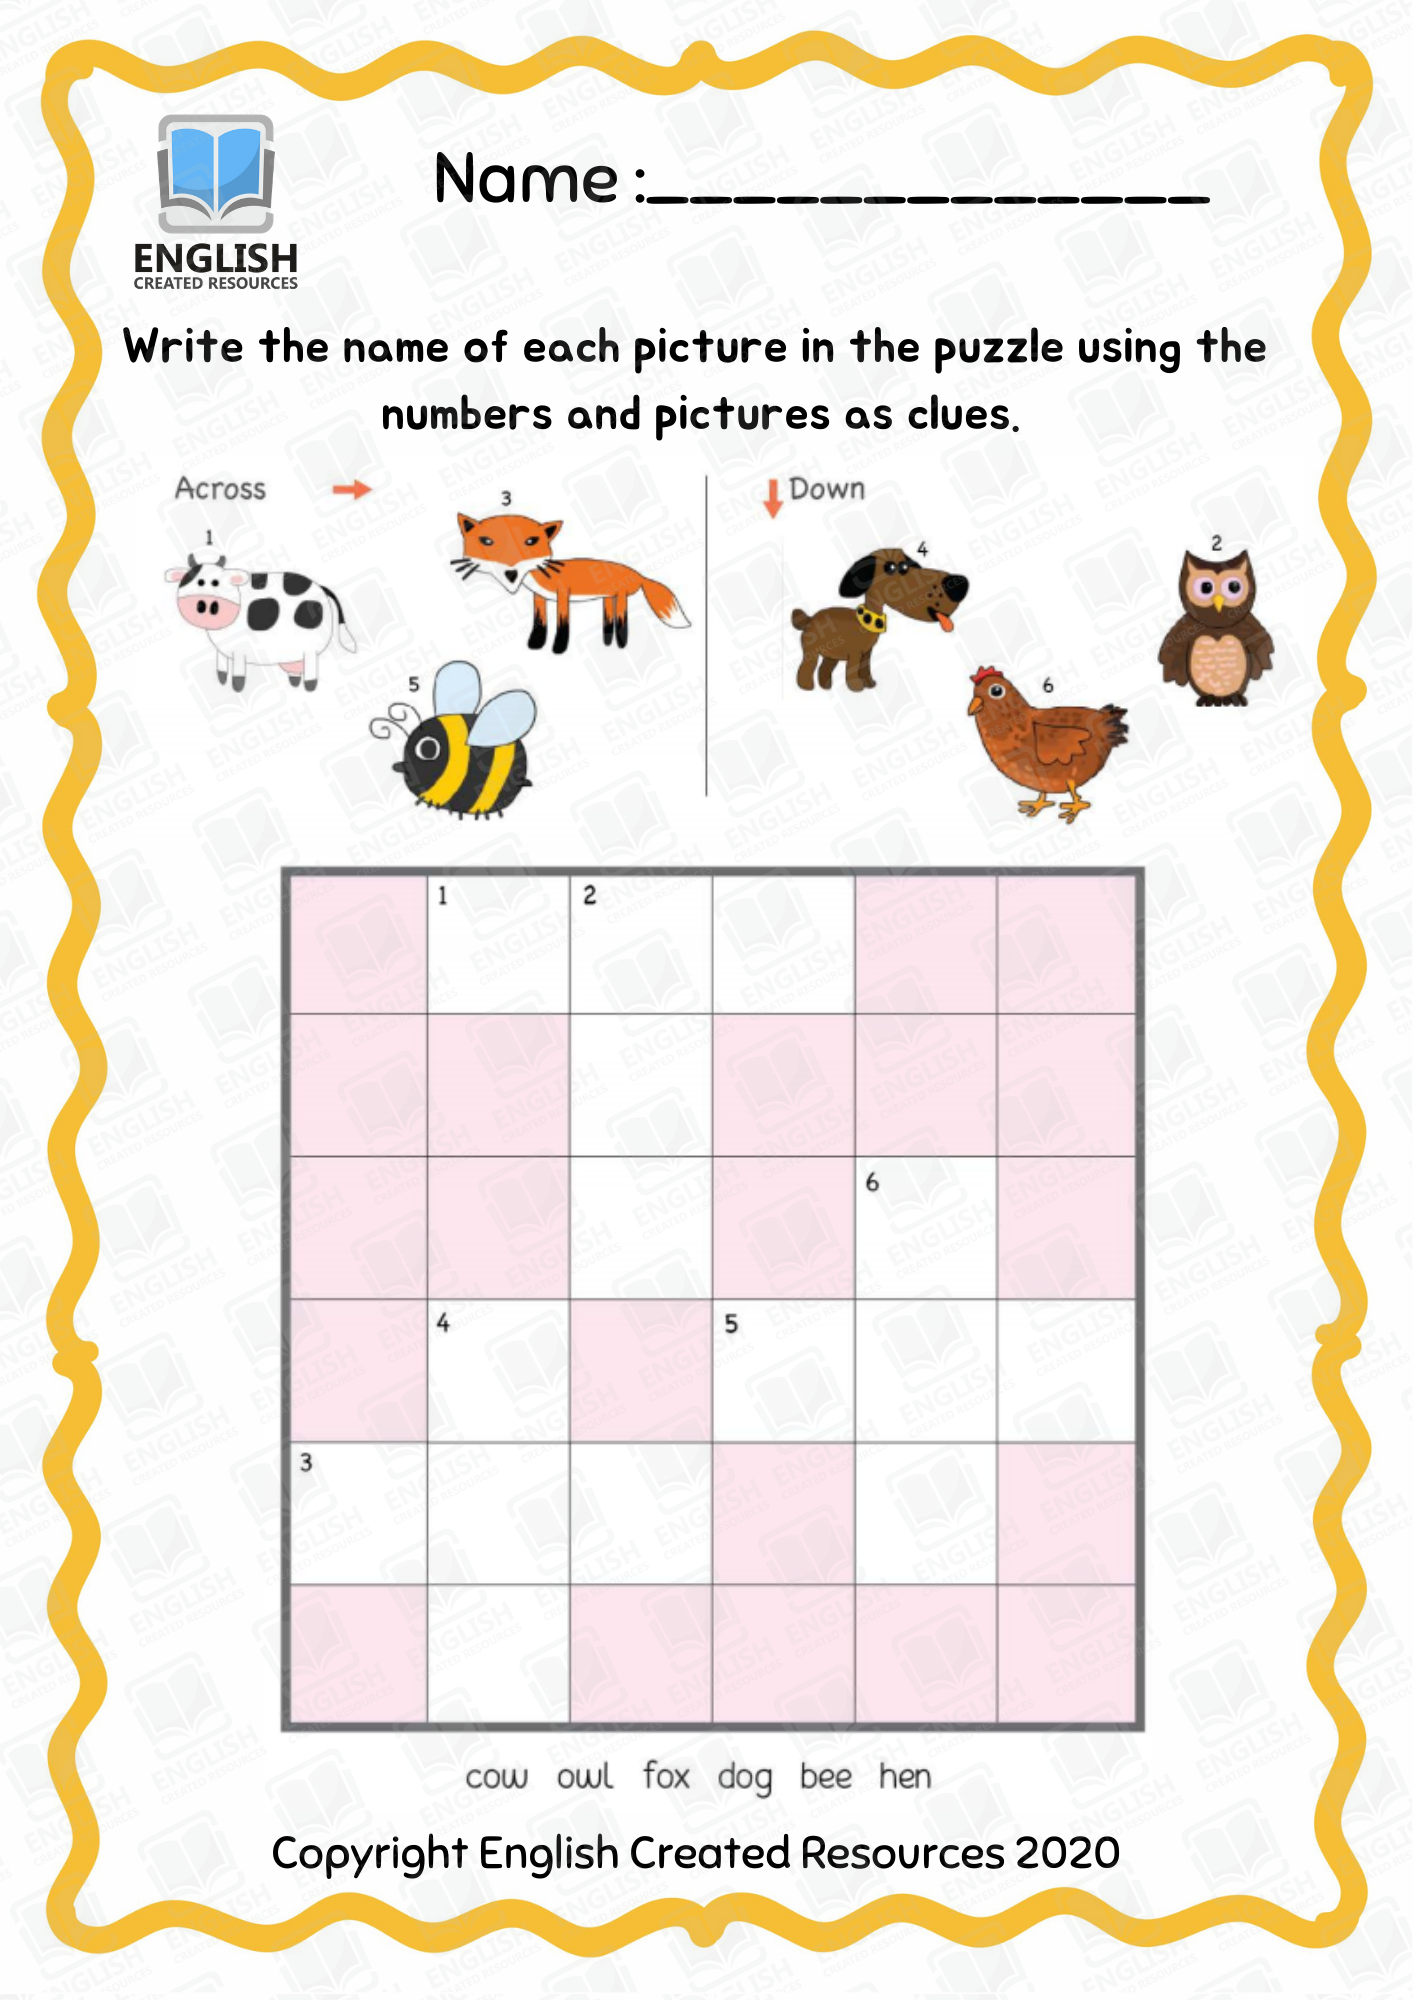 kindergarten-crossword-puzzle